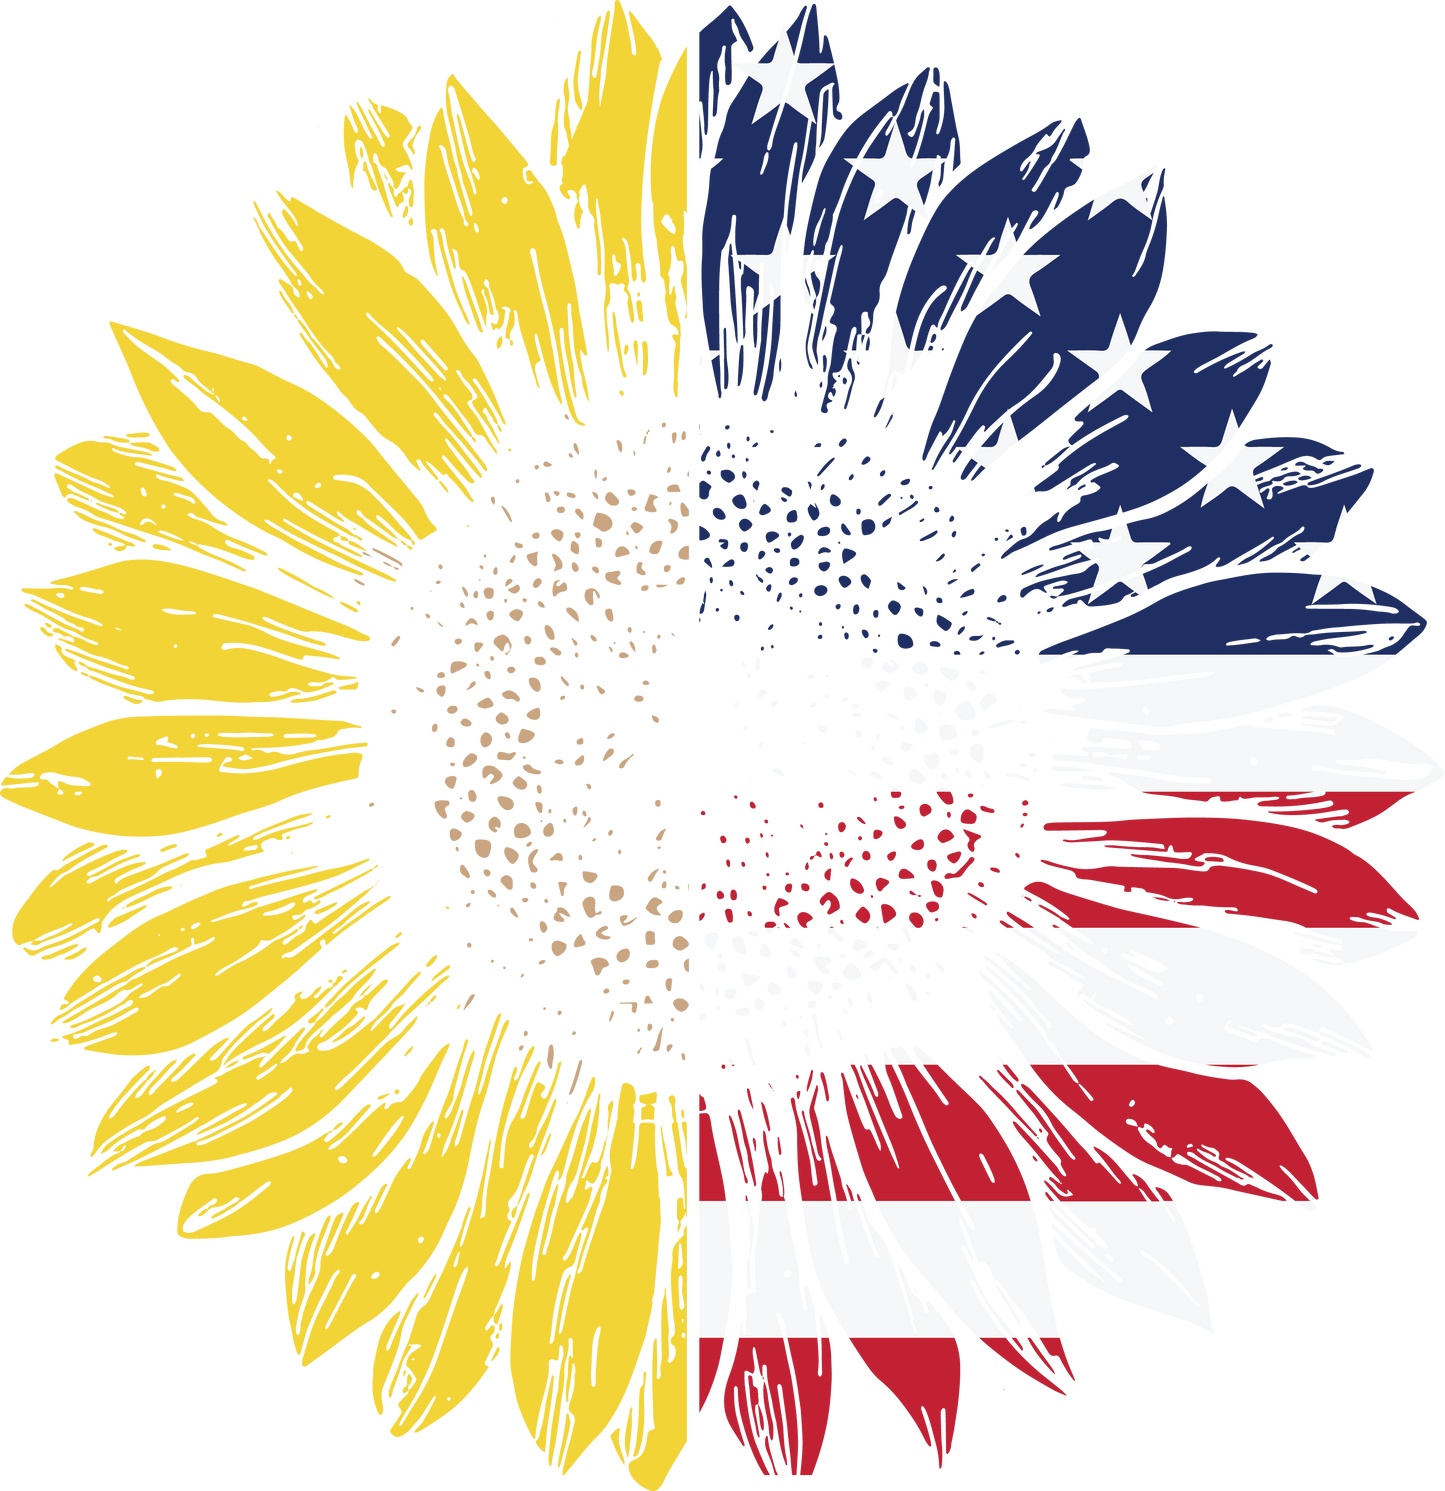 Sunflower American Flag hoodie